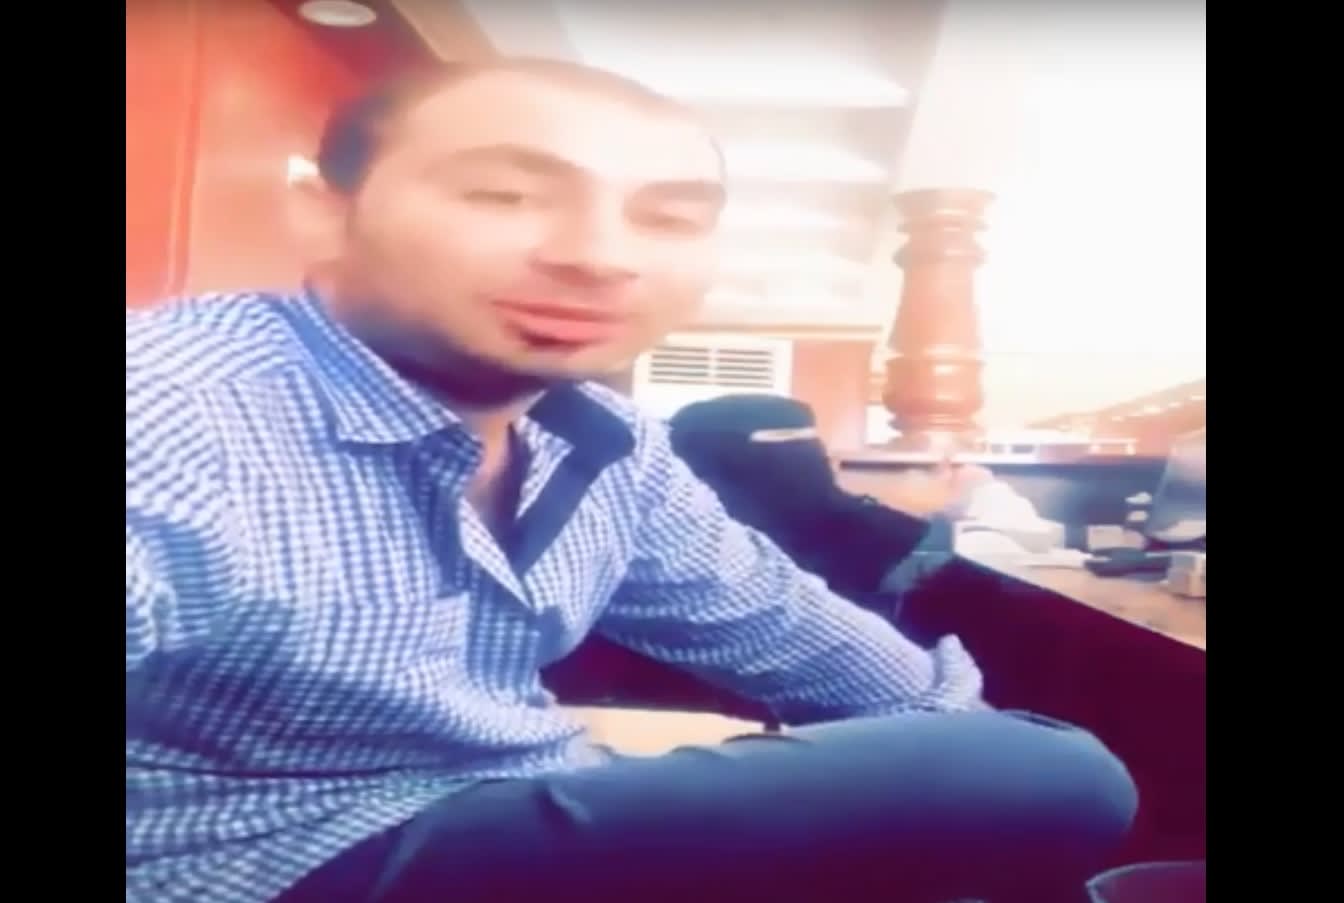 السعودية: ضبط مقيم ظهر بشكل "مسيء" مع زميلته بمقطع فيديو 